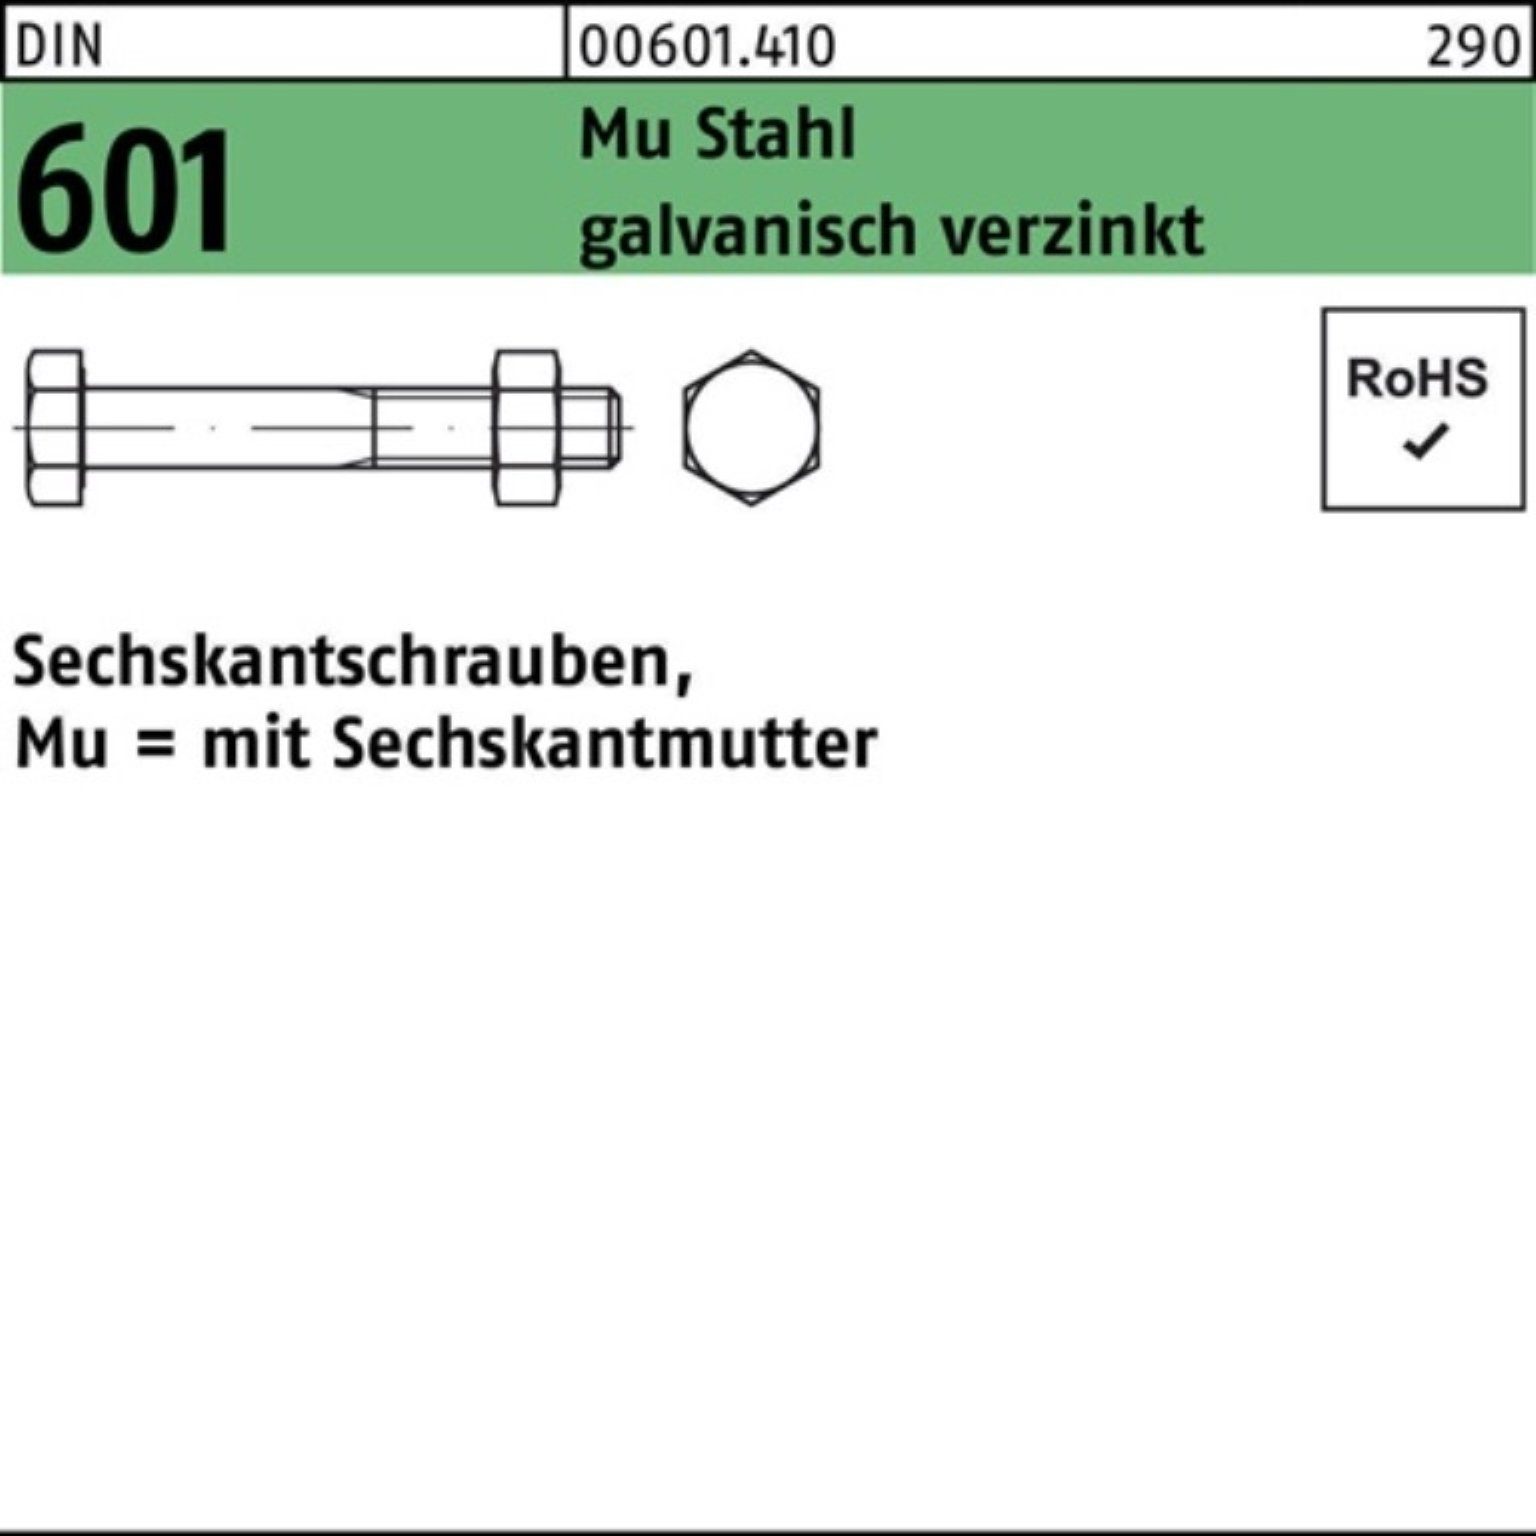 Reyher Sechskantmutter 200er Pack Sechskantschraube DIN 601 Sechskantmutter M6x40 Mu Stahl 4.